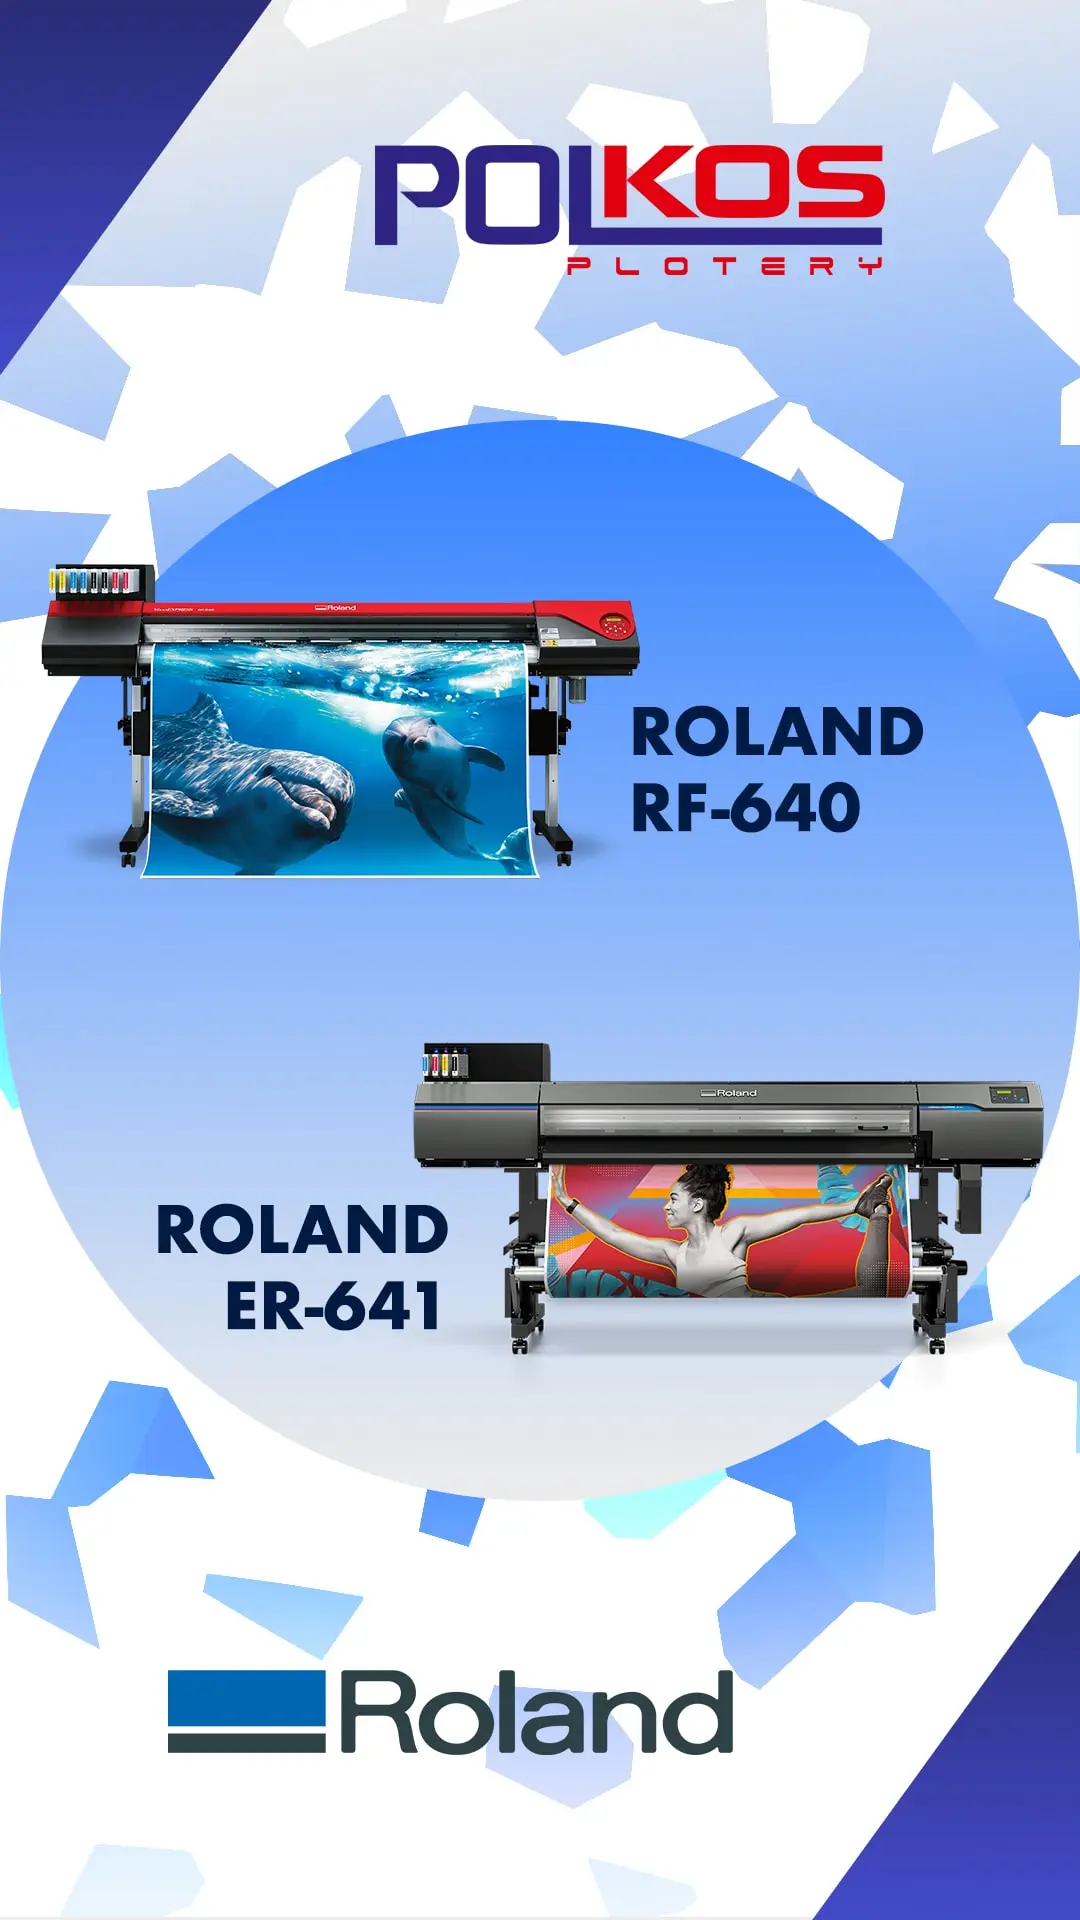 Roland RF-640 VS Roland ER-641